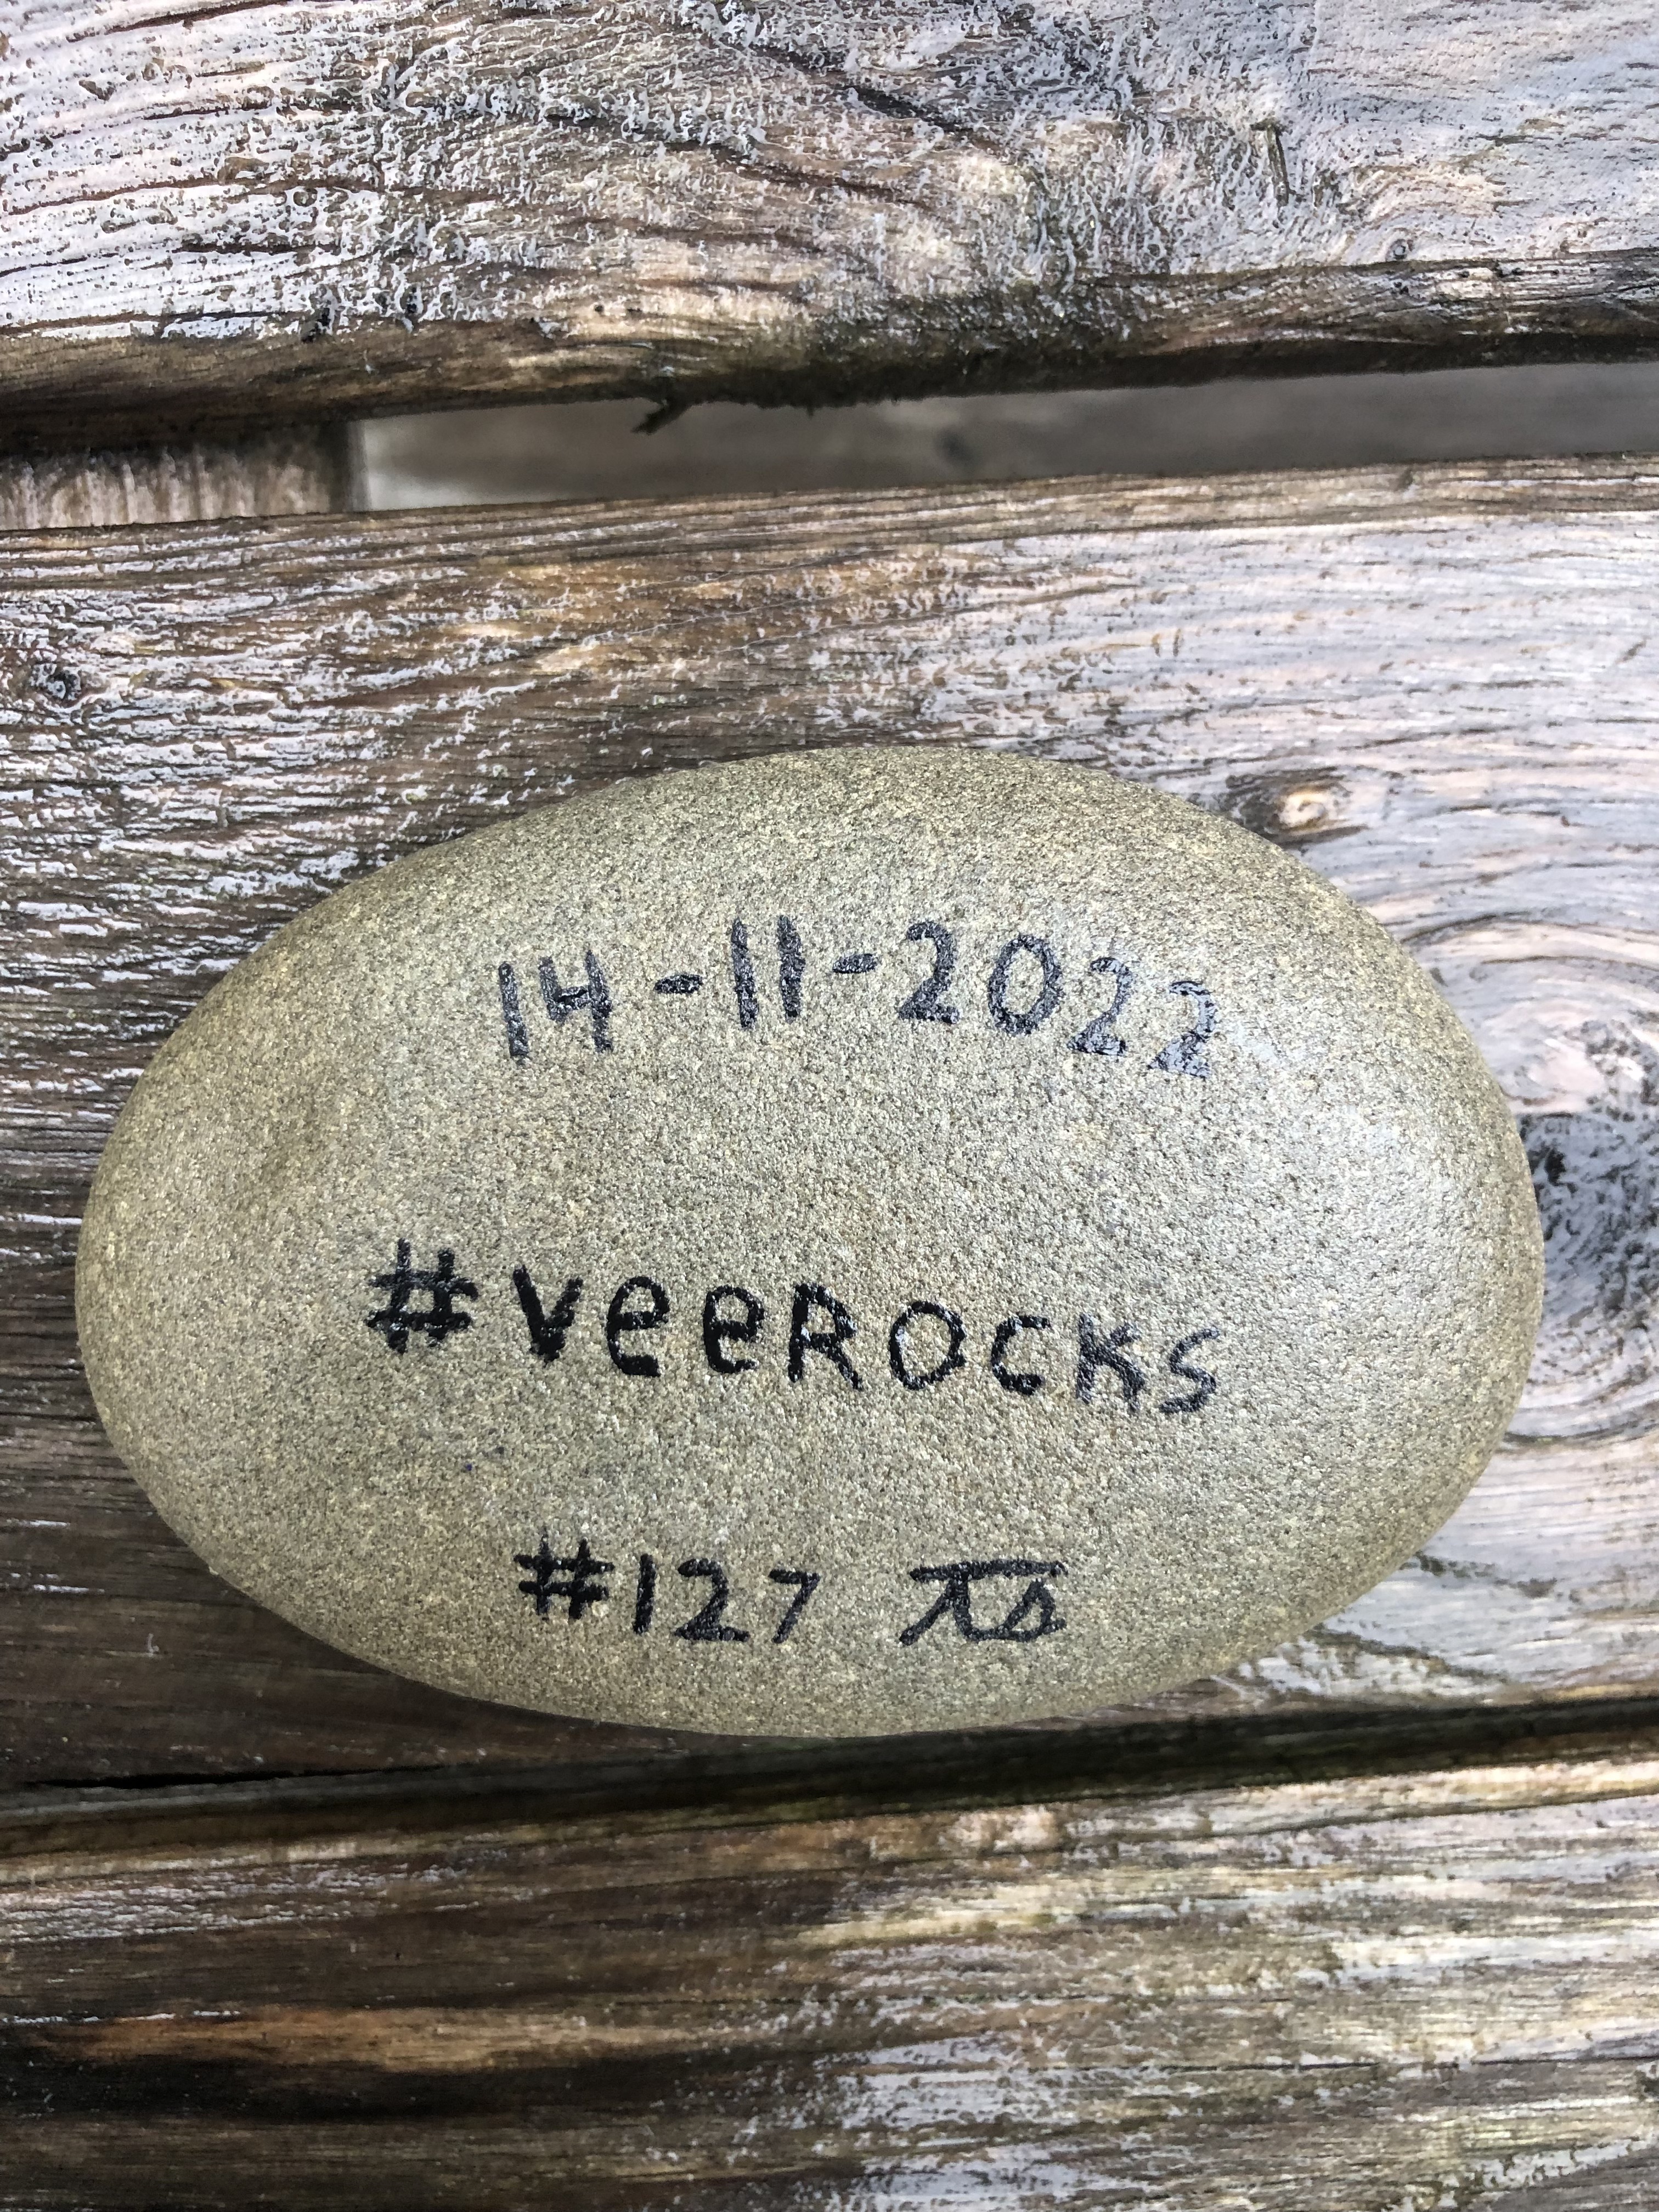 VeeRock #127